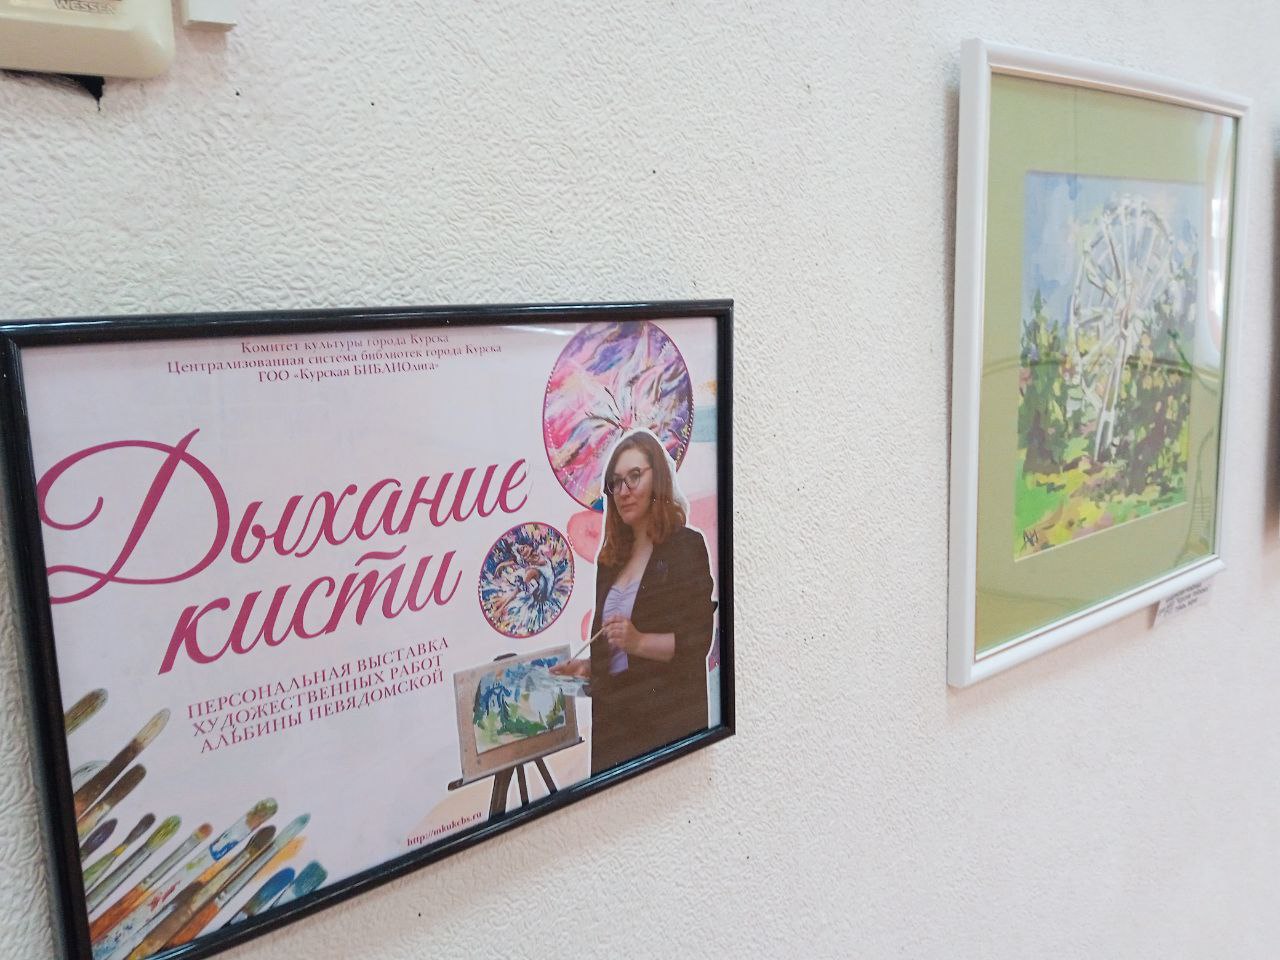 В Курске открыли выставку картин Альбины Невядомской «Дыхание кисти»